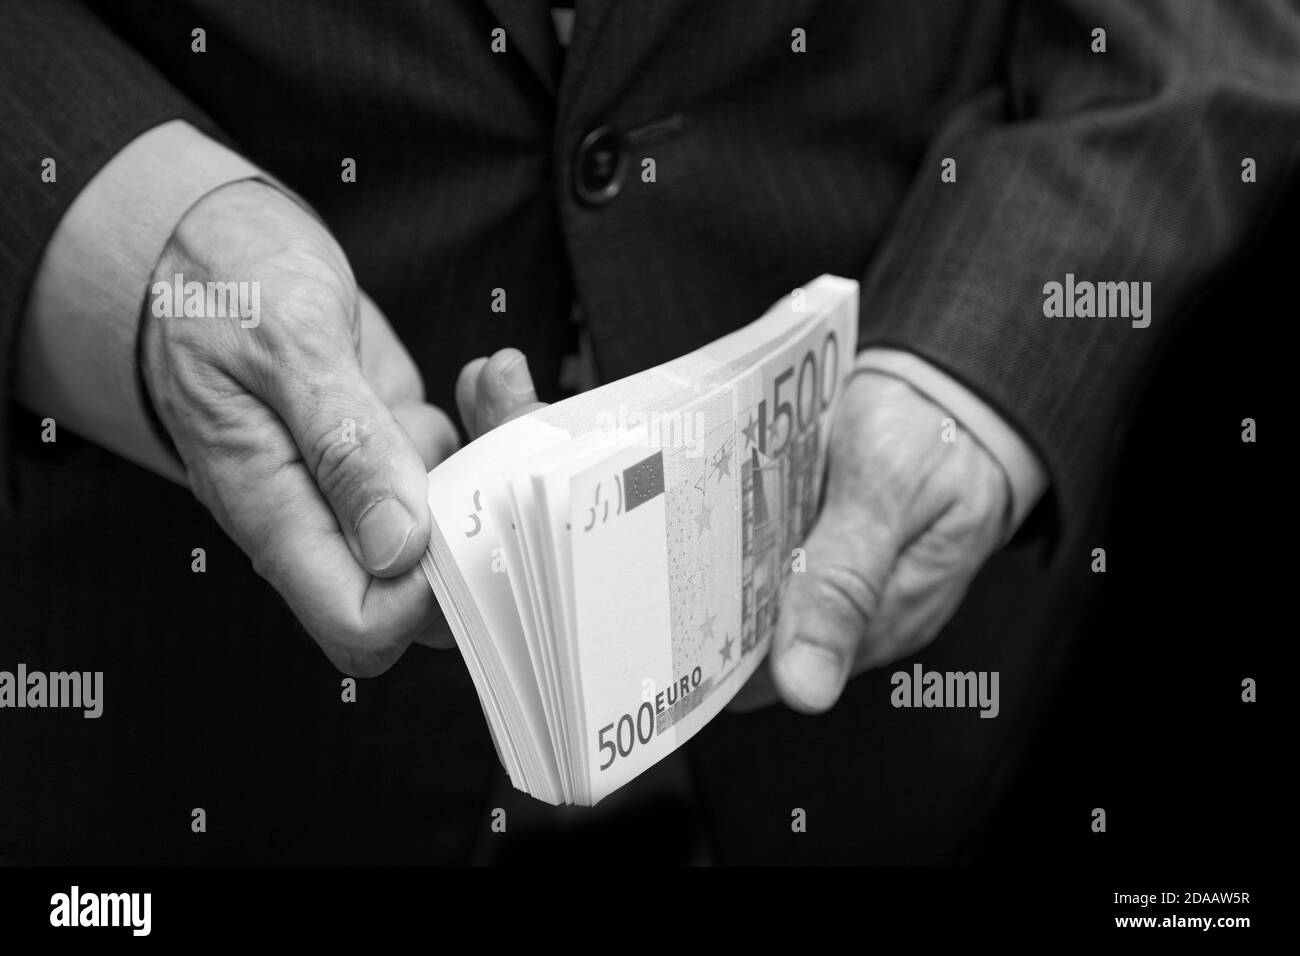 Ein Mann zählt das Geld in einem Geldbündel von 500 Euro. Geringer Fokus. Schwarz-Weiß-Geschäfts- oder Finanzkonzept. Stockfoto